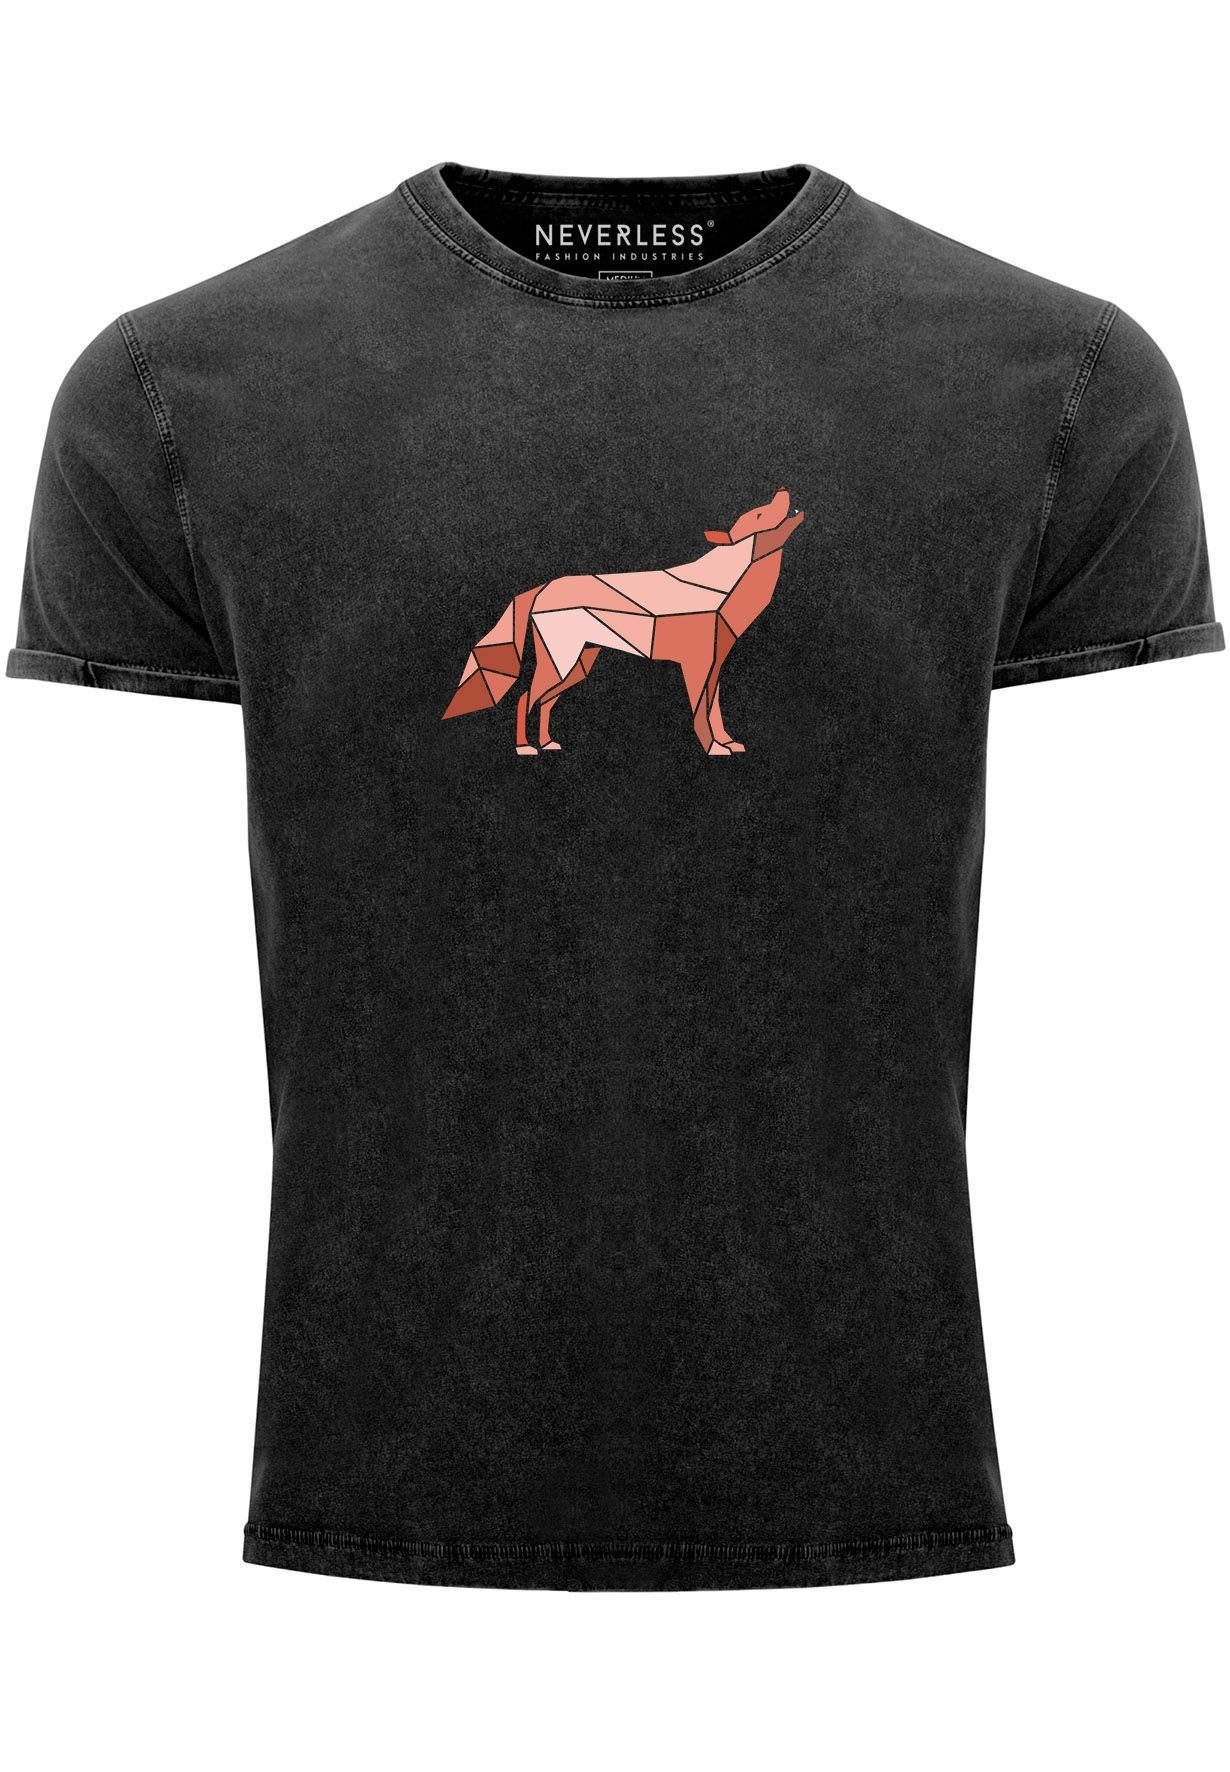 Neverless Print-Shirt Herren Vintage Shirt Aufdruck Wolf Polygon Print Geometrie Outdoor Wil mit Print schwarz